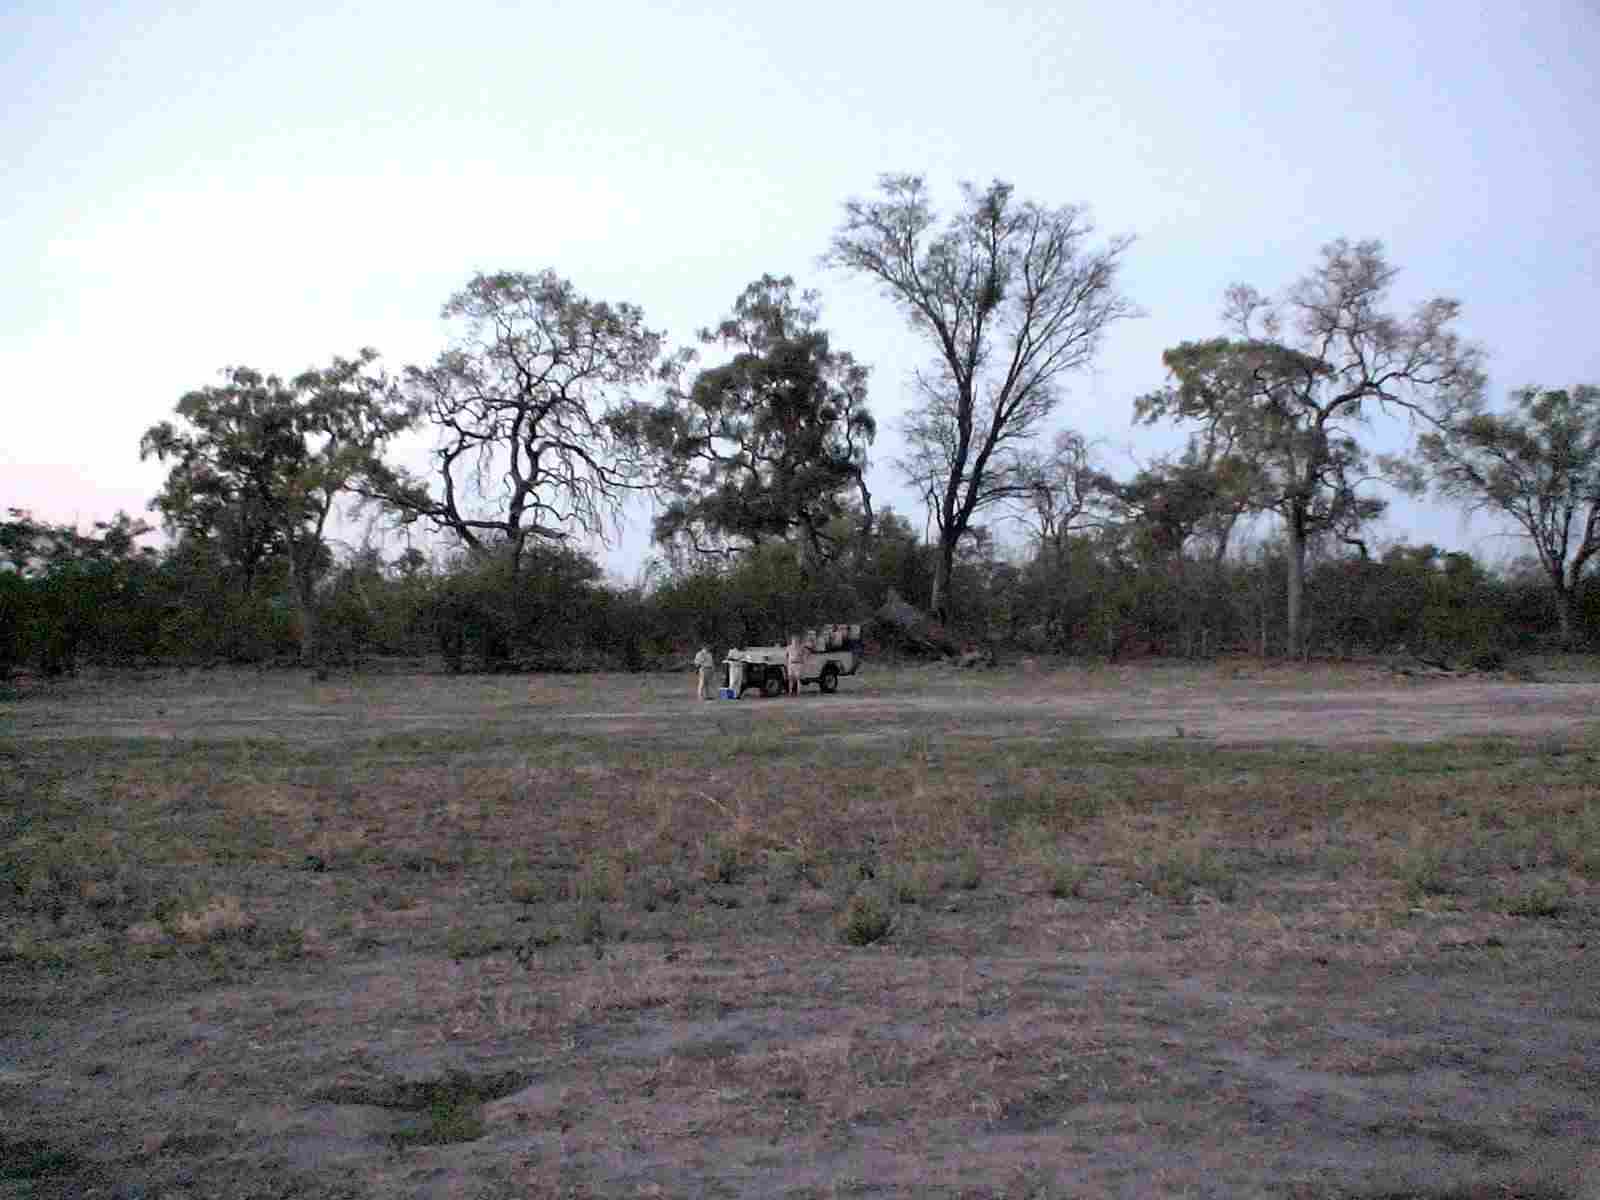 Scenery in Botswana